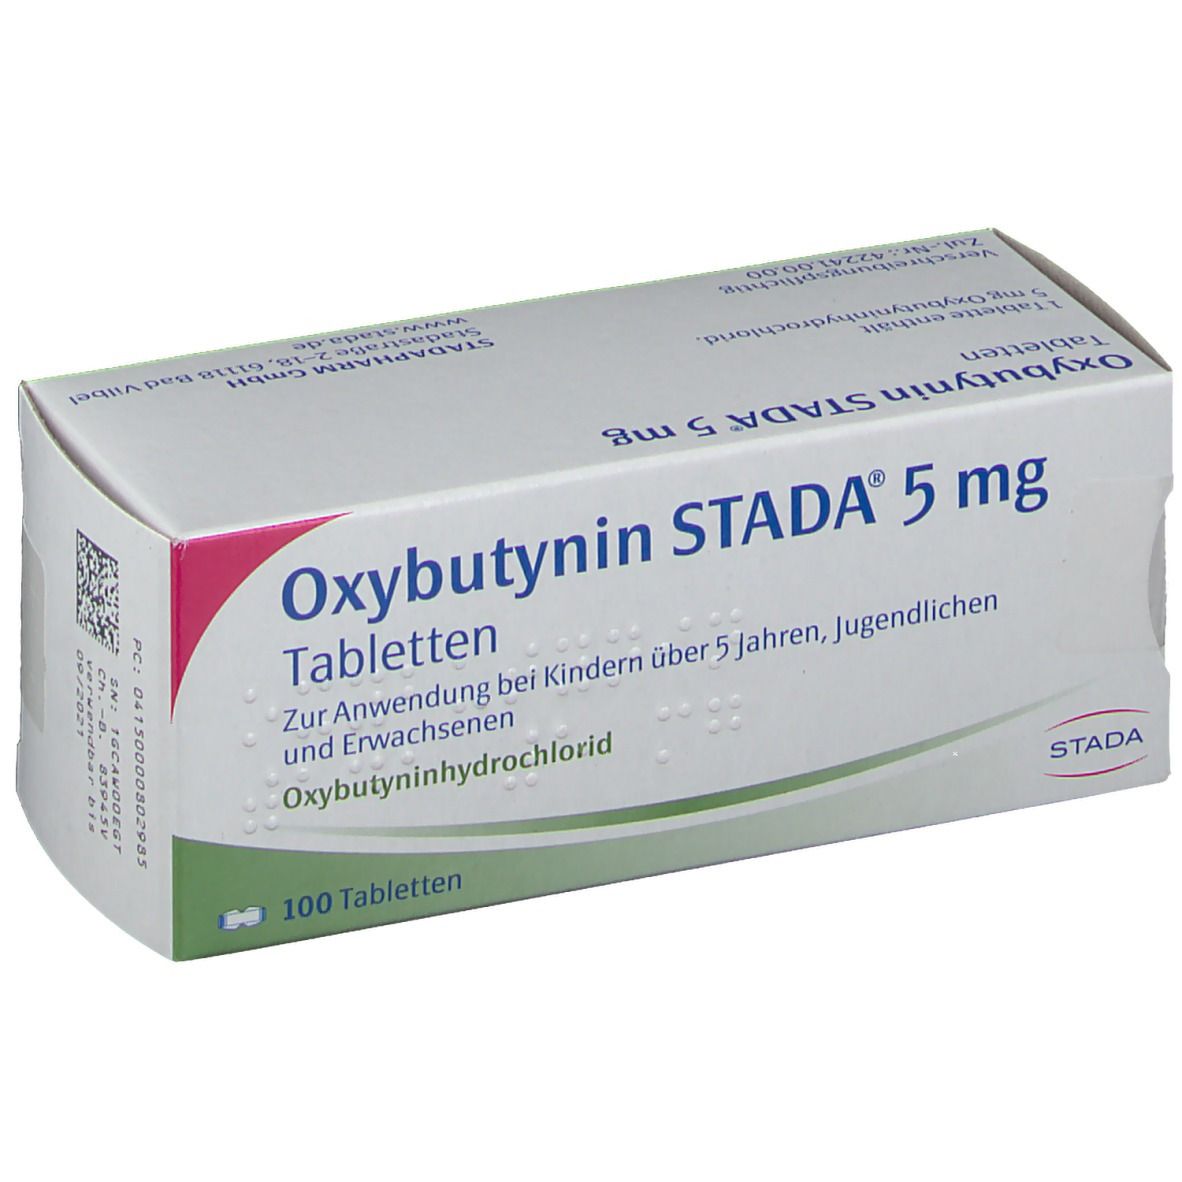 Oxybutynin STADA® 5 mg